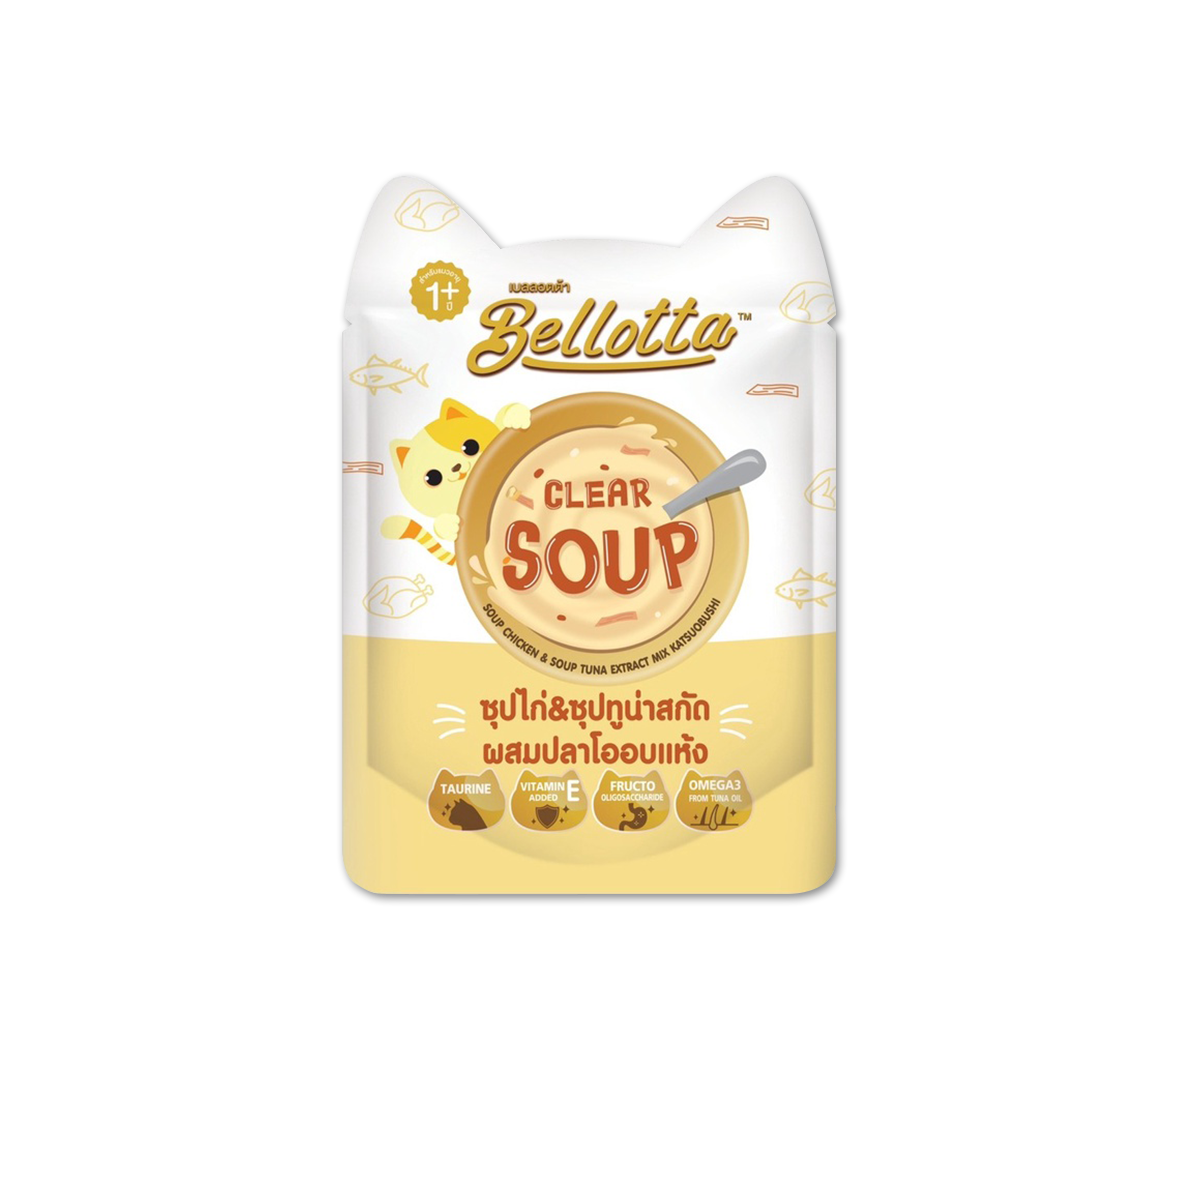 Bellotta Clear Soup Chicken & Soup Tuna Extract mix Katsuobushi เบลลอตต้า ชนิดน้ำซุปซอ งรสไก่&ซุปทูน่าสกัดผสมปลาโออบแห้ง ขนาด 40 กรัม (12 ซอง)